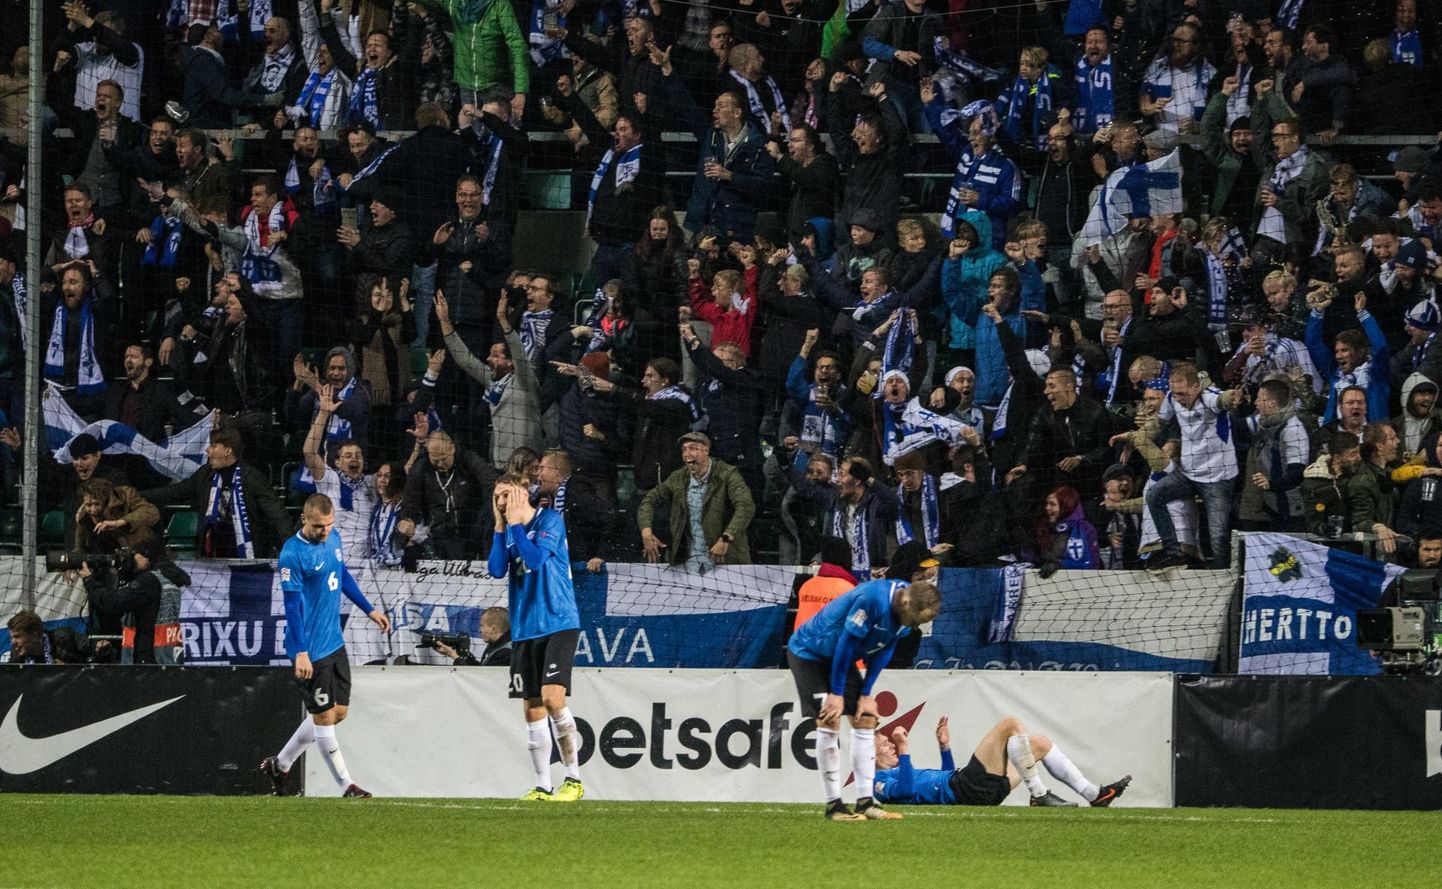 Eesti jalgpallikoondis sai reedel ülivaluse kaotuse, kui Soome suutis 90+1. minutil kaitse lahti muukida ja võiduvärava lüüa. Täna ootab meeskonda Ungari näol uus ja sama keeruline väljakutse, sest Rahvuste liiga C-divisjoni tase ongi Eesti jaoks tugev.